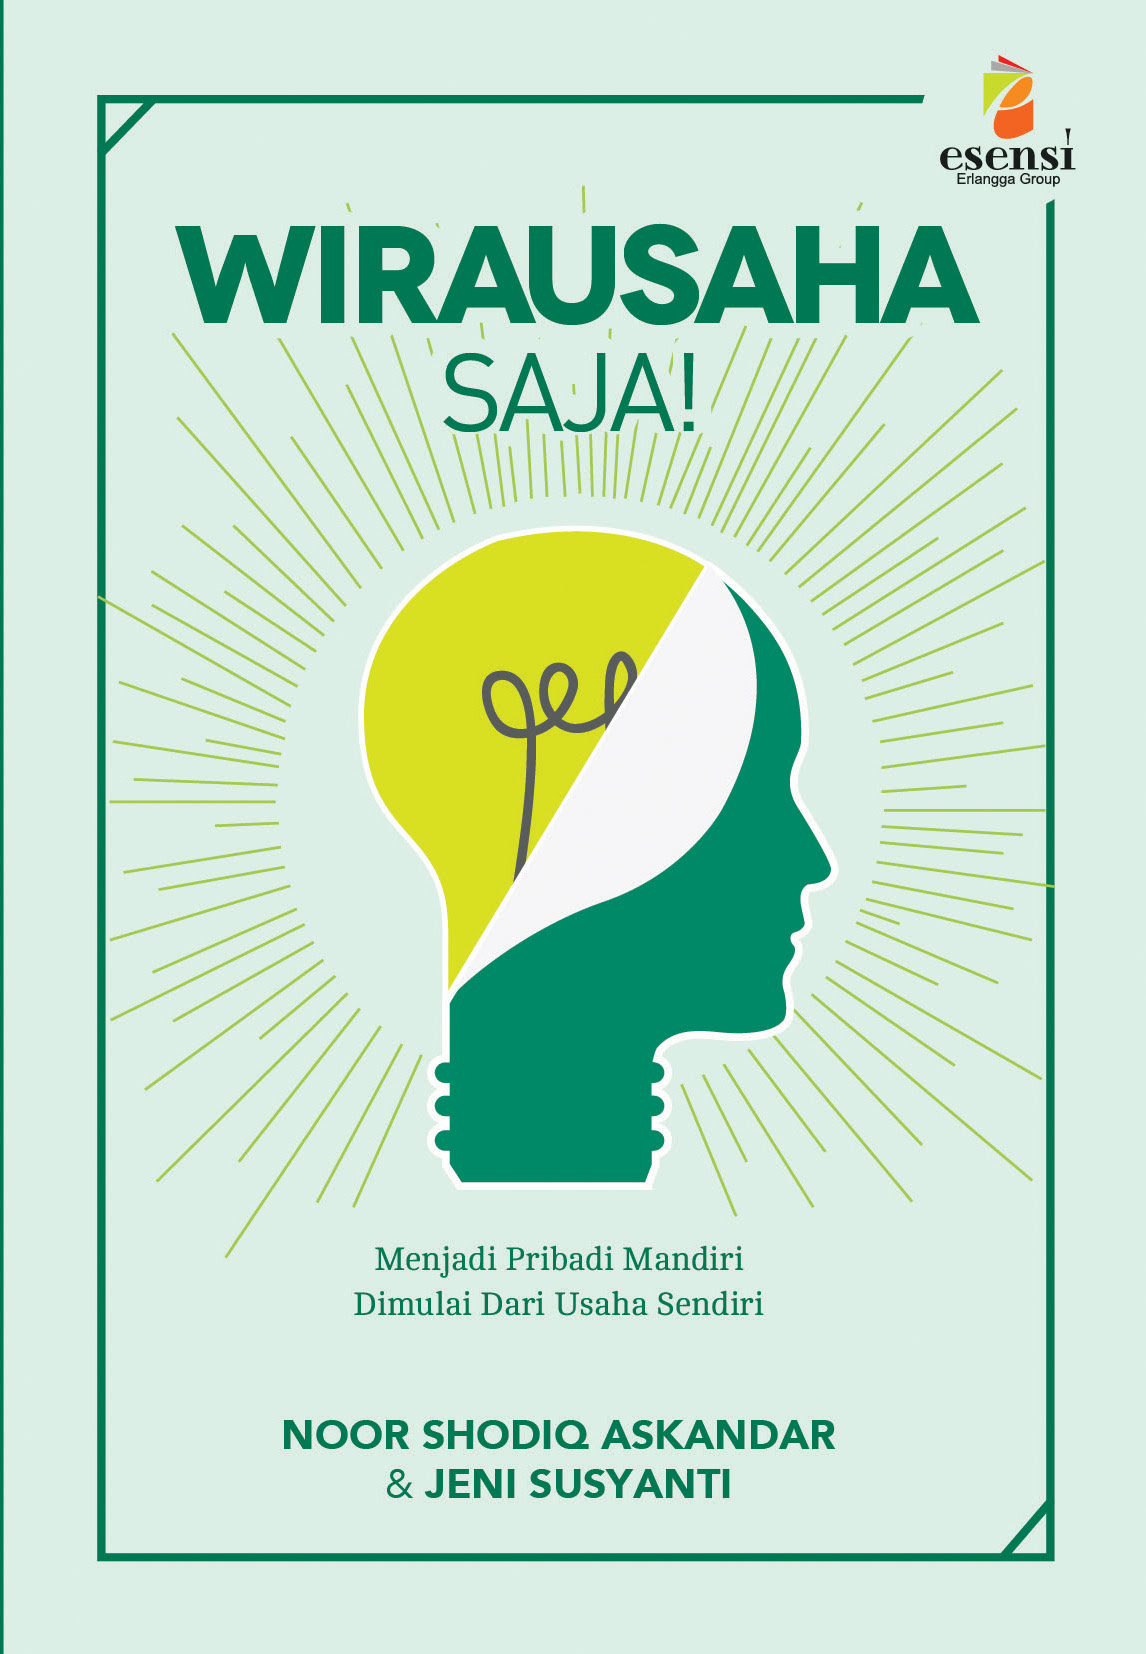 Poster Wirausaha